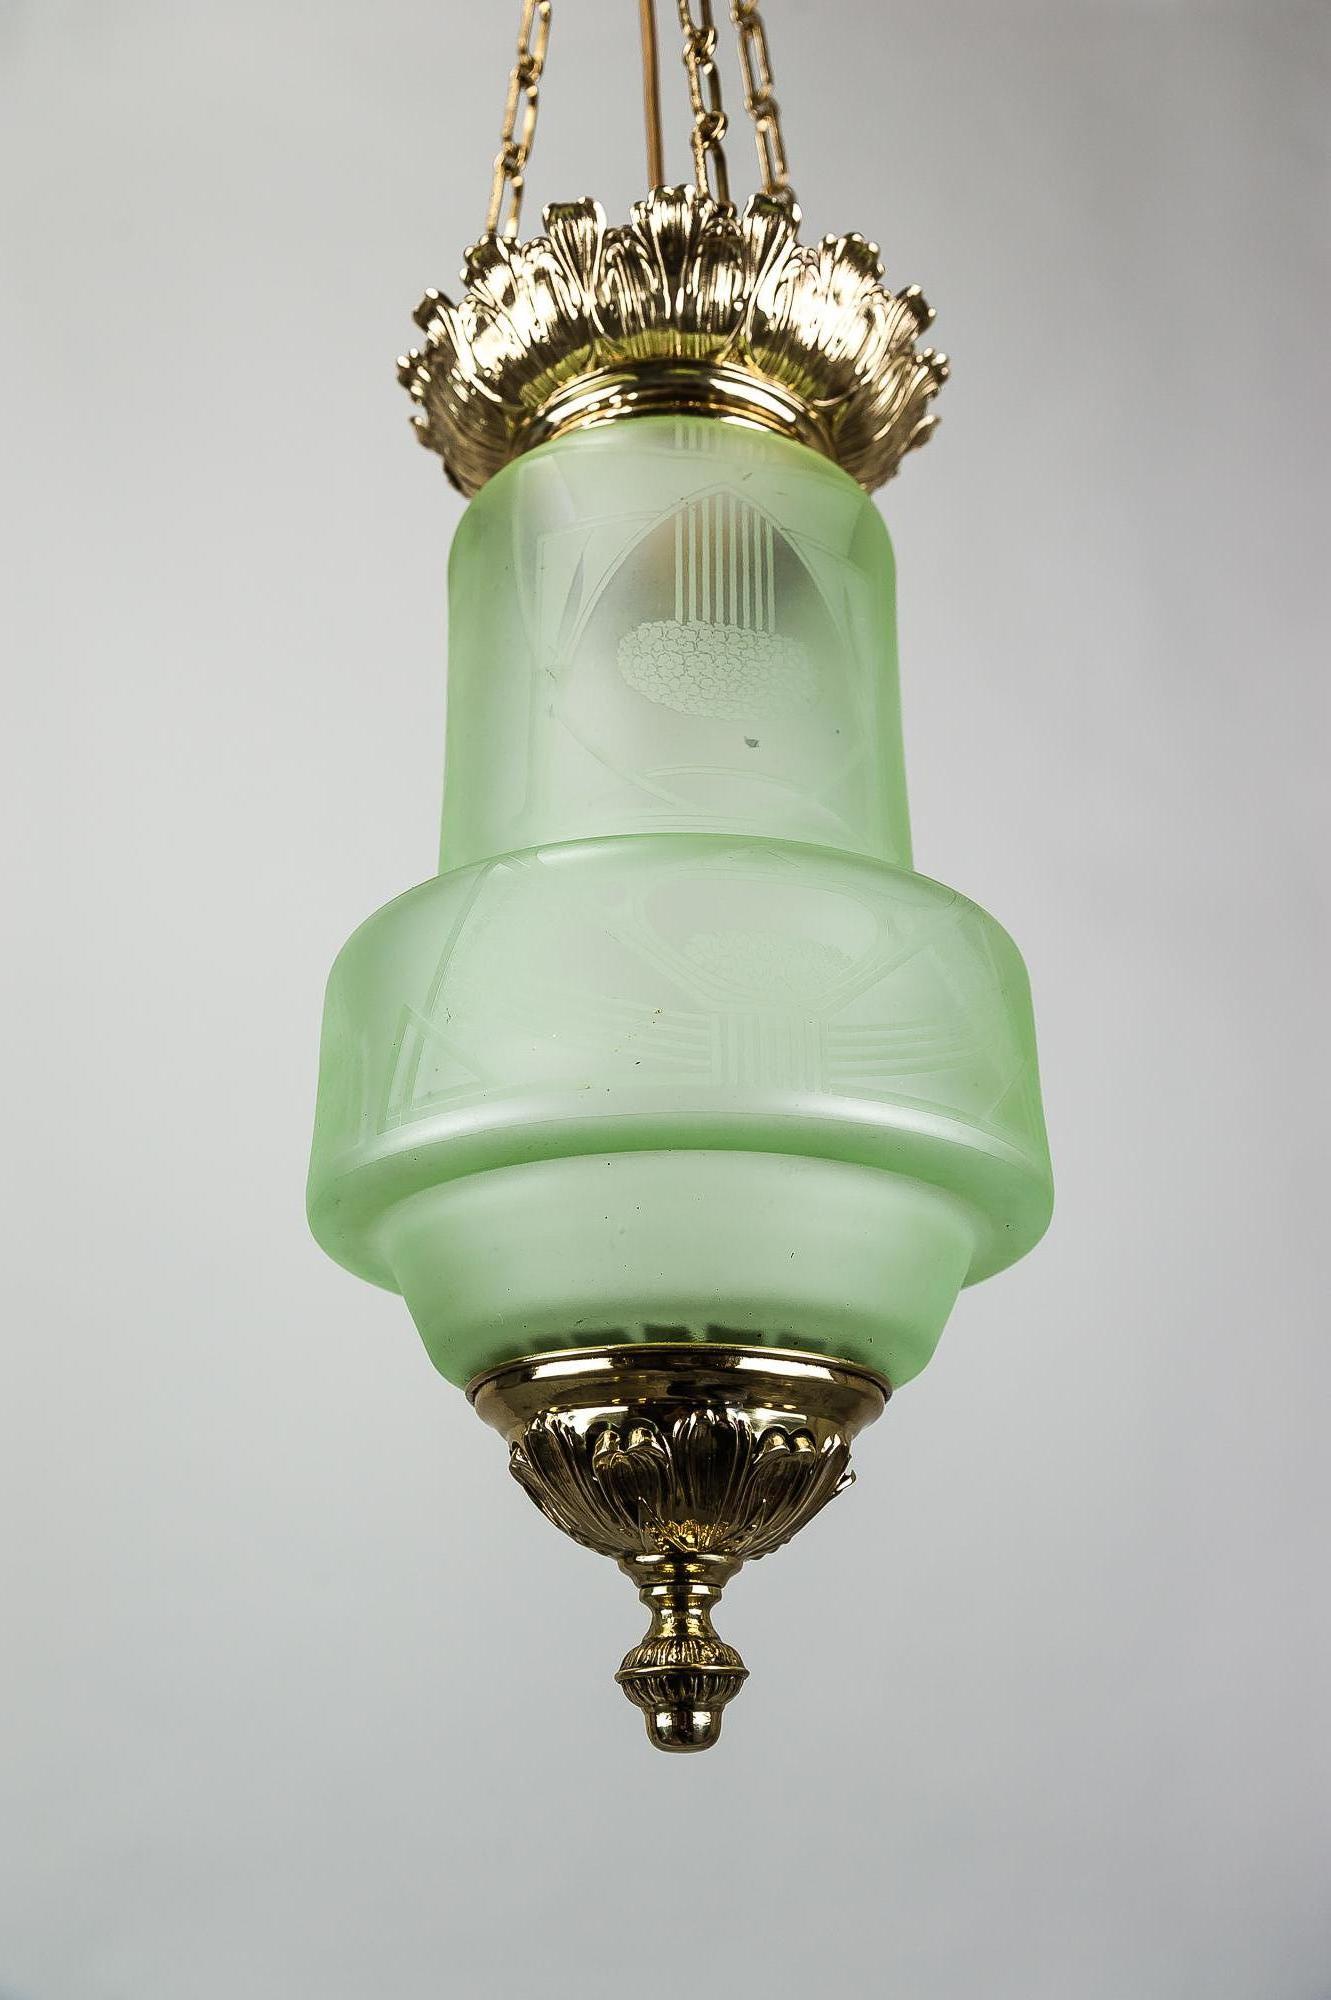 Jugendstil Pendant with Original Glass, circa 1900s 1